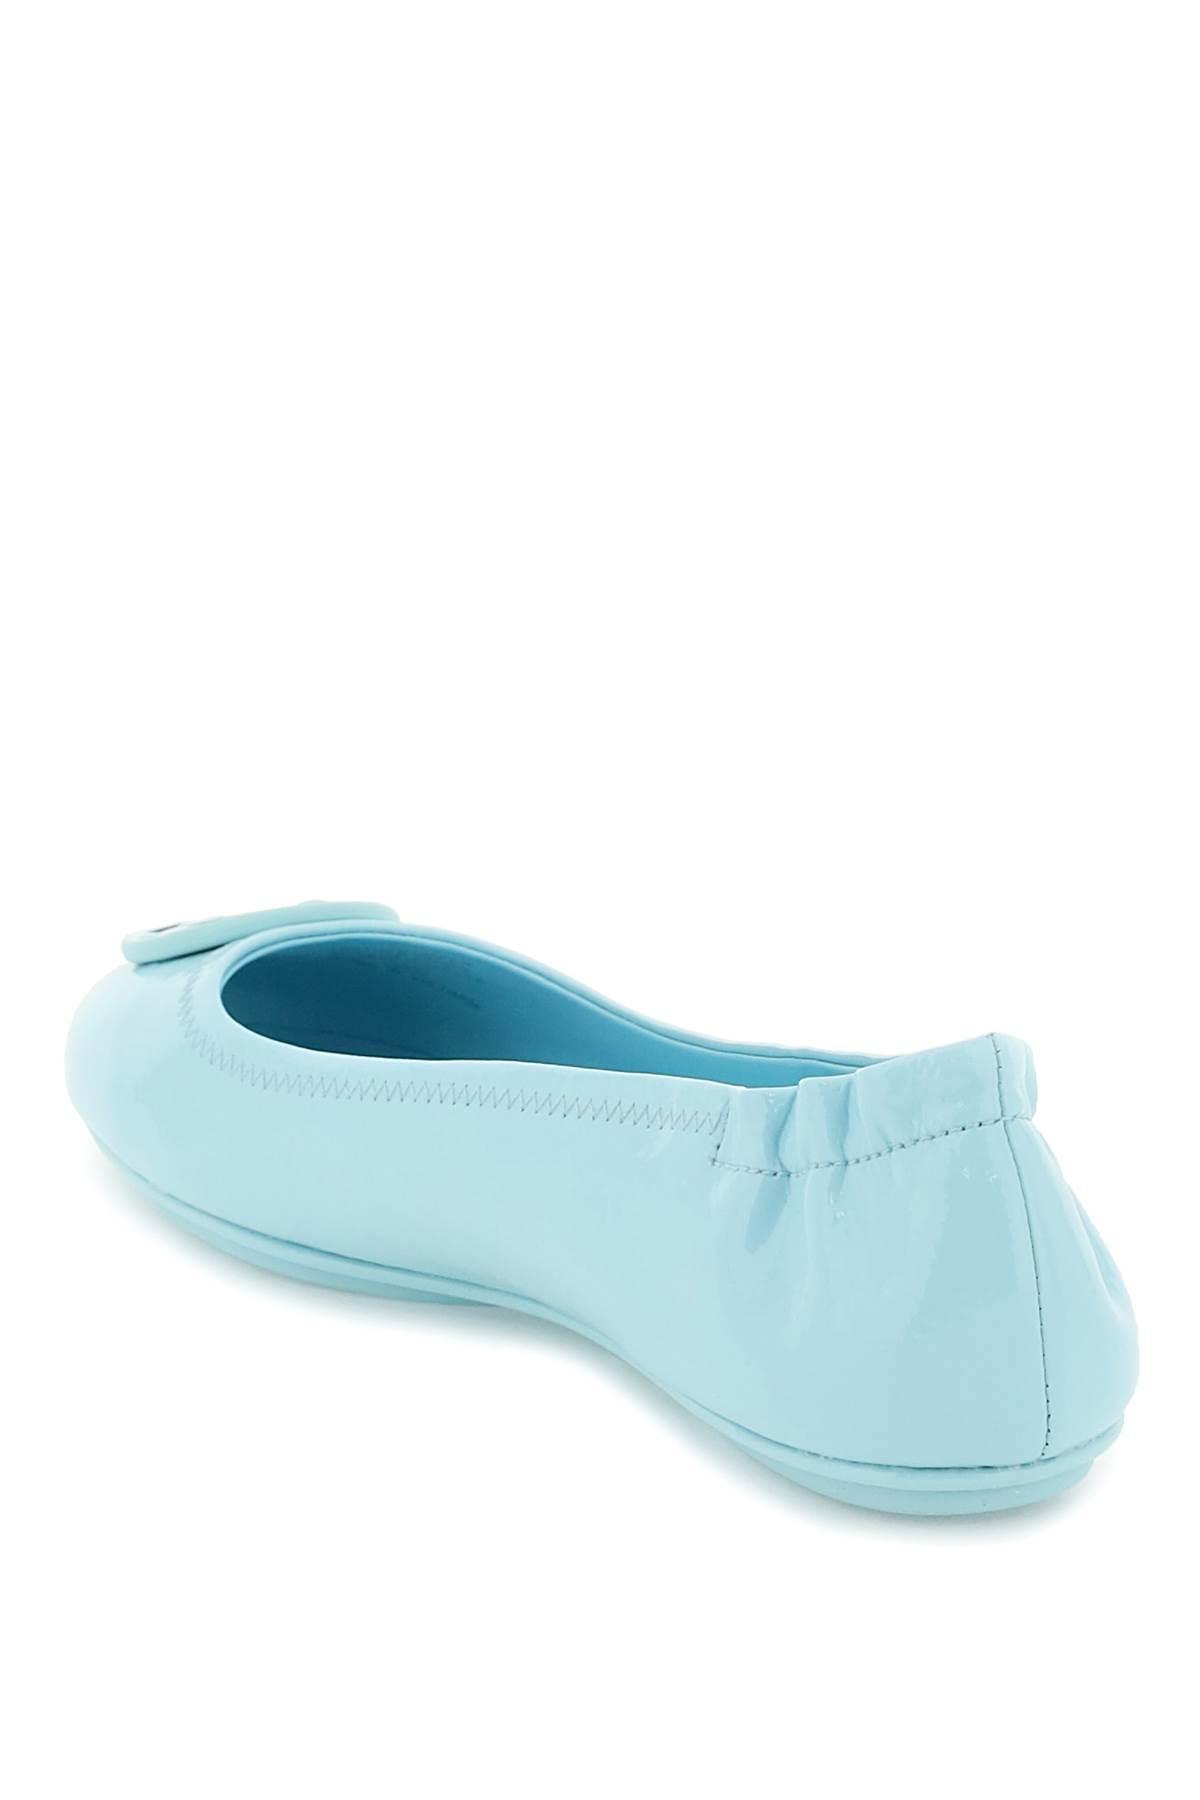 fyrretræ Sequel Limited Tory Burch 'minnie' Ballerina Flats in Blue | Lyst